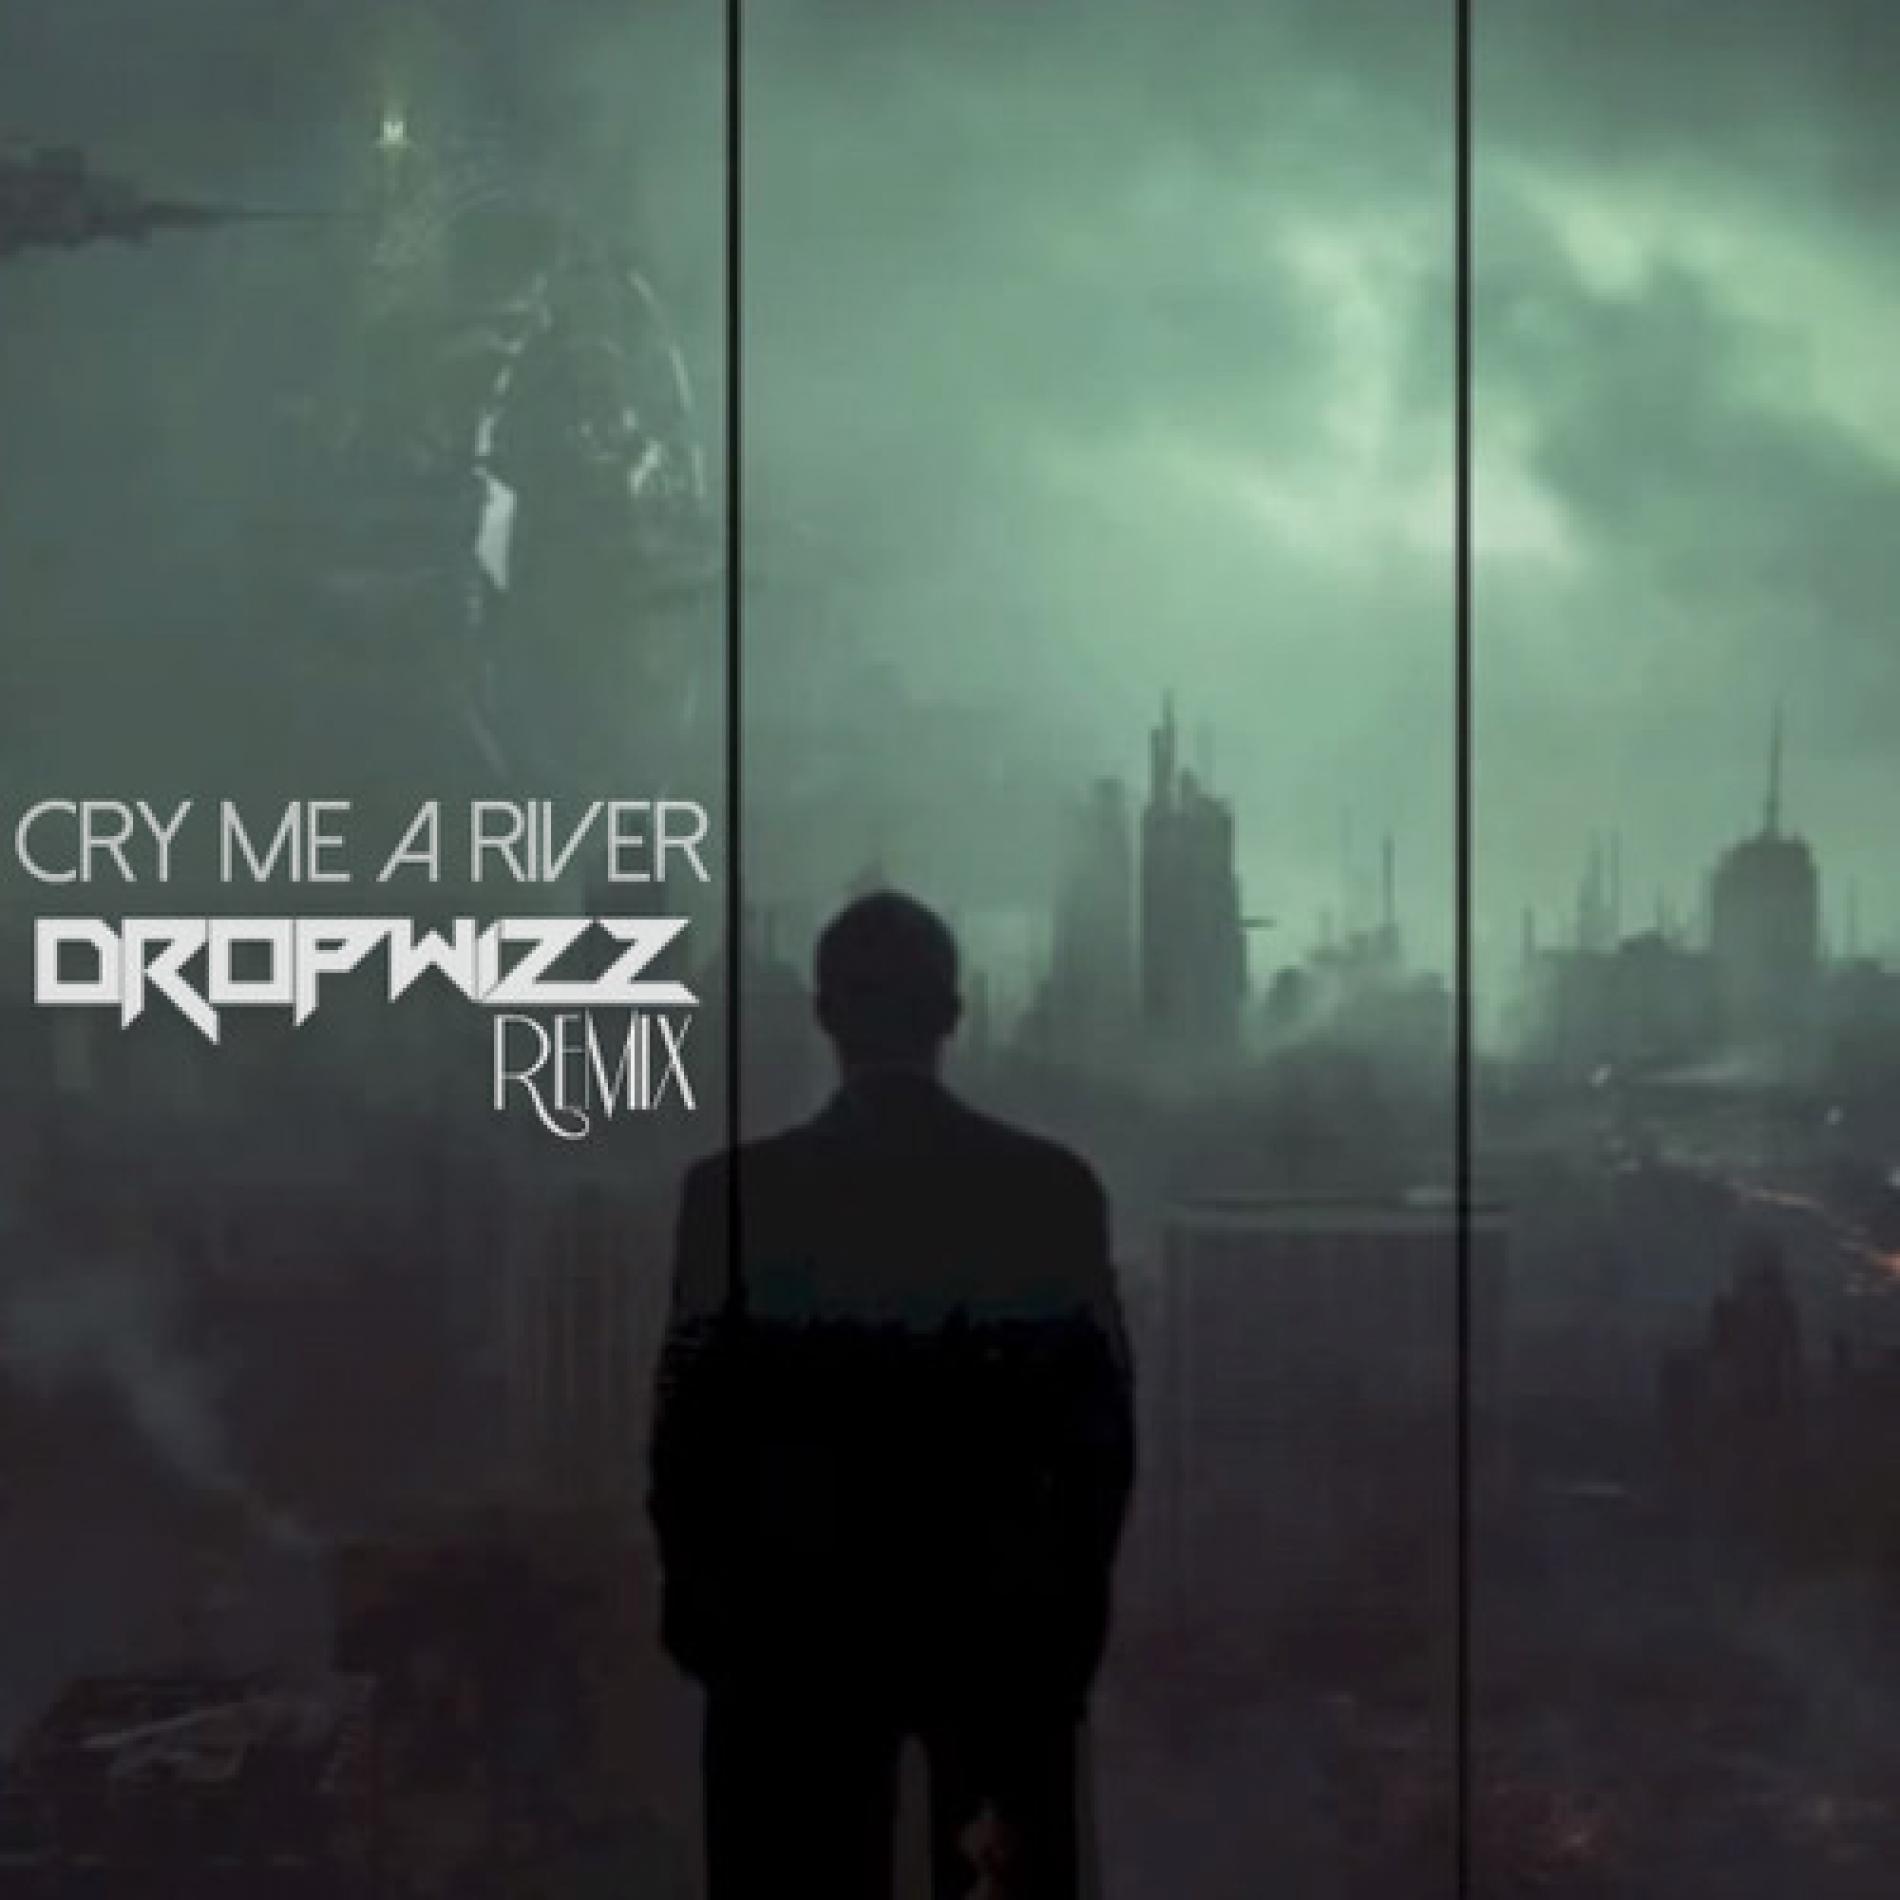 Dropwizz – Cry Me A River (remix)